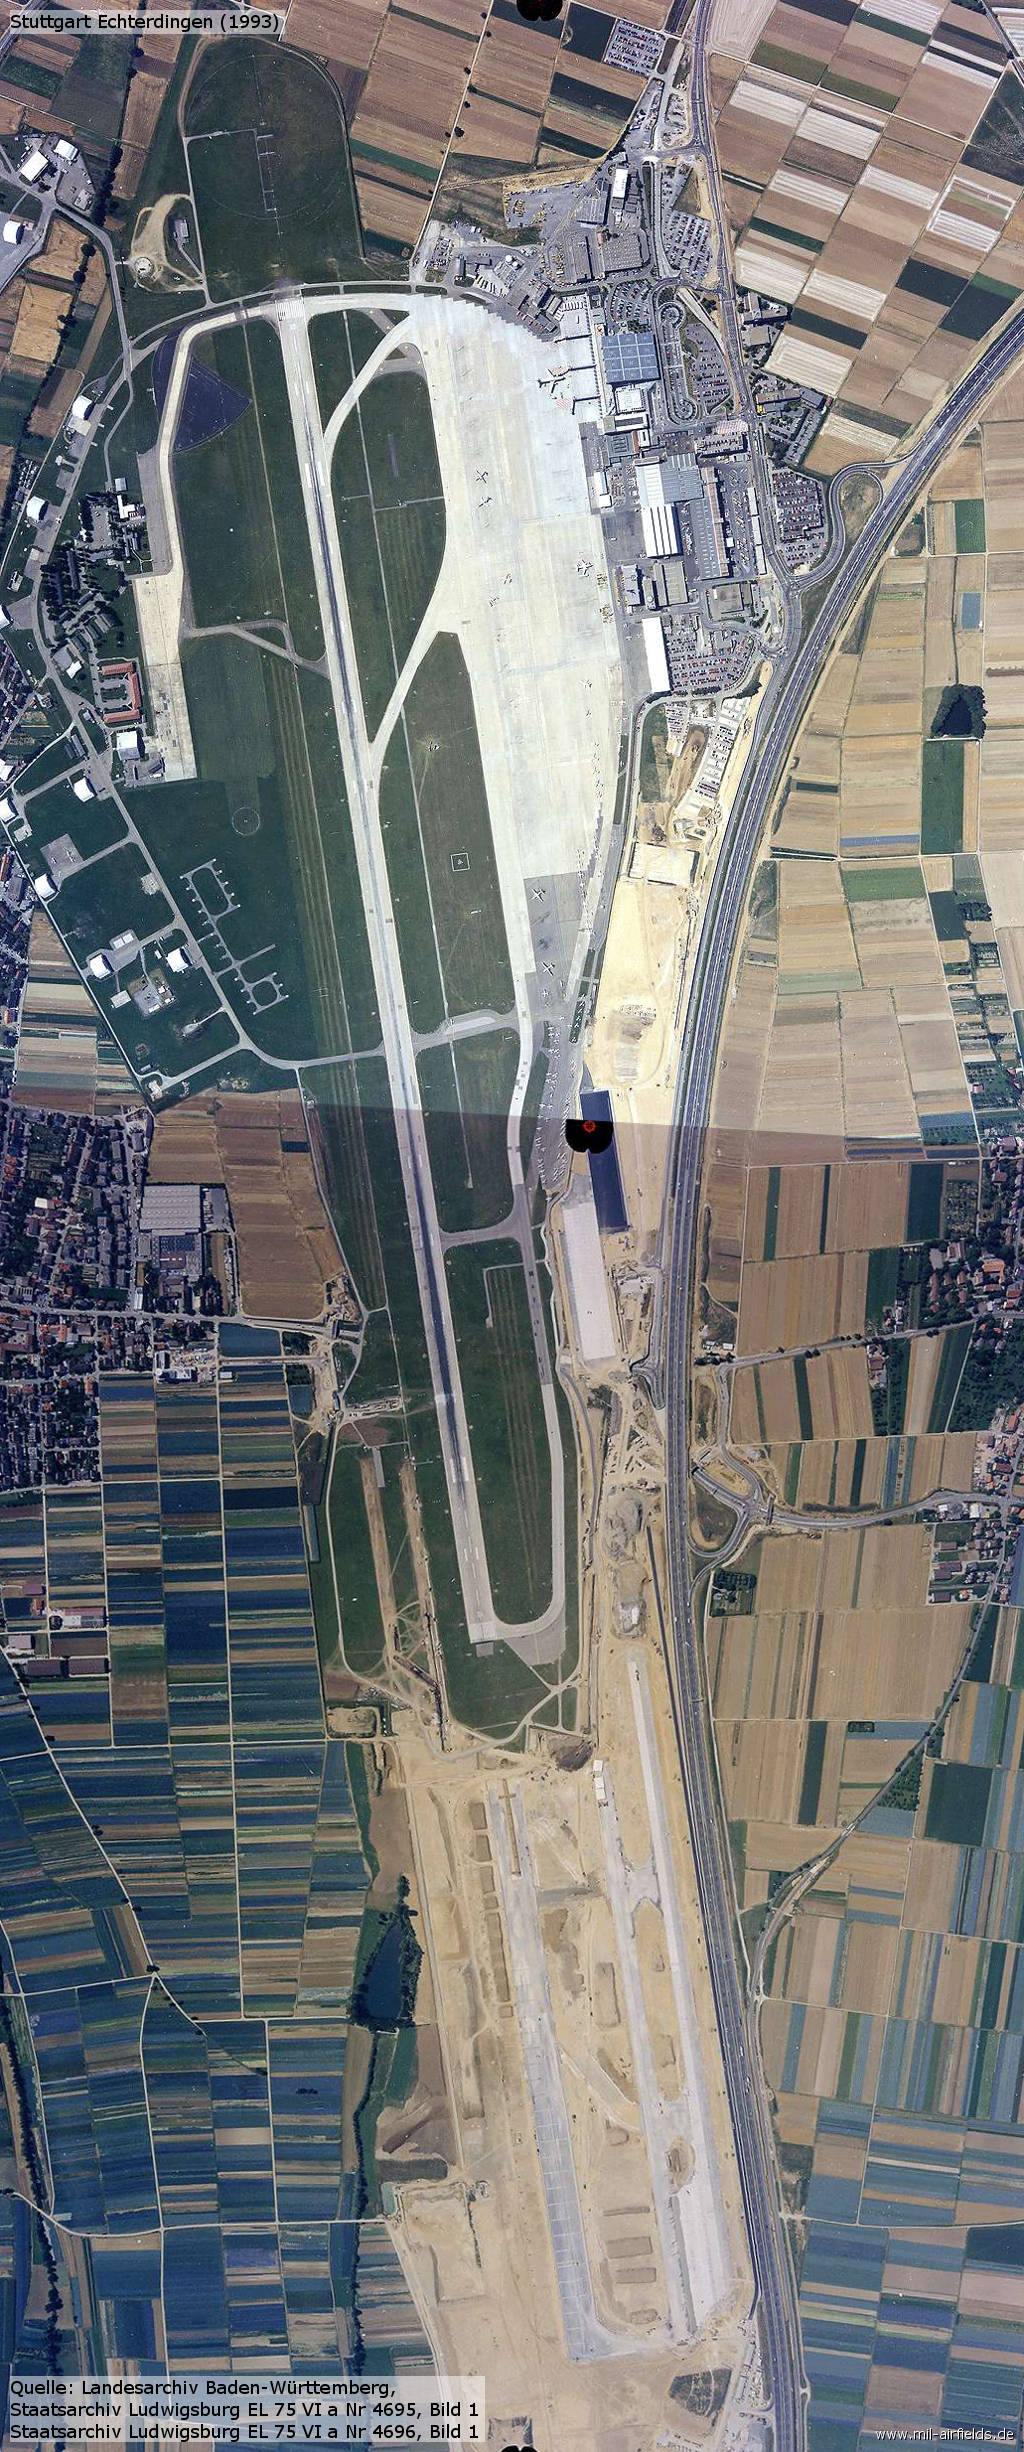 Stuttgart Airport aerial picture 1993